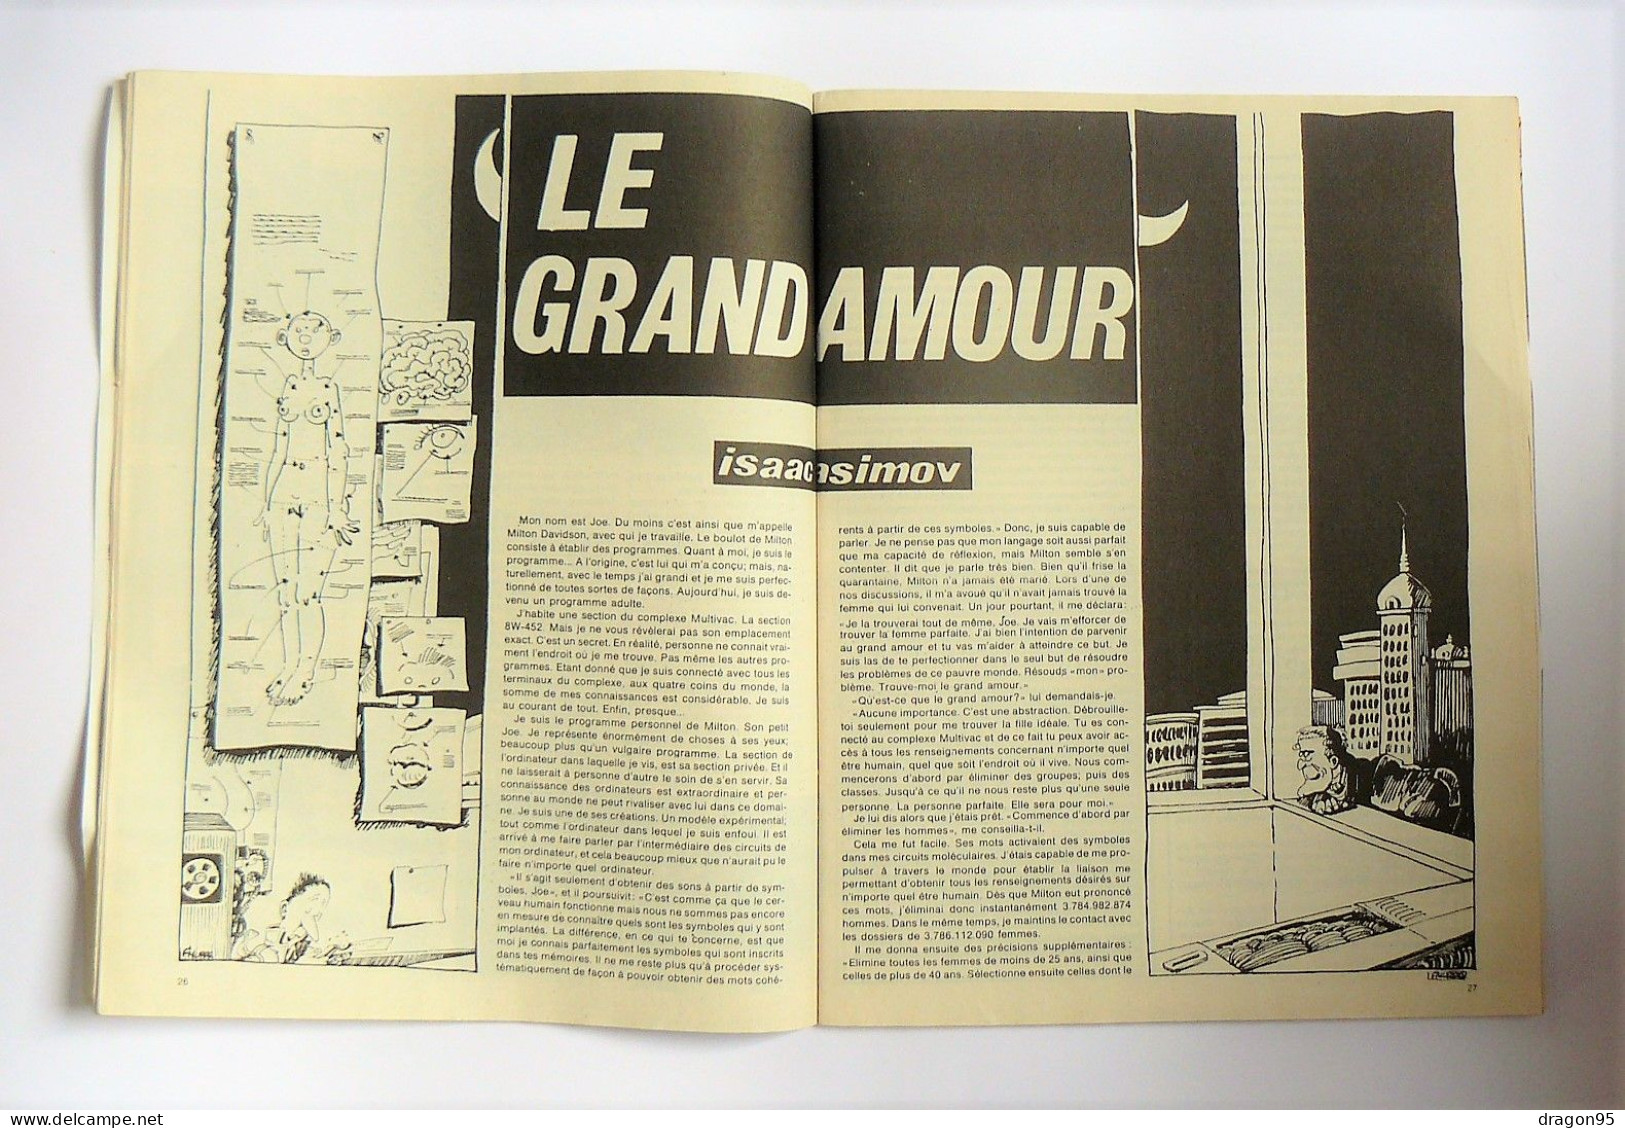 Revue FUTURS N°1 : Avec Grand Poster De MEZIERES - Asimov - Clarke - Forest... - 1978 - Otras Revistas